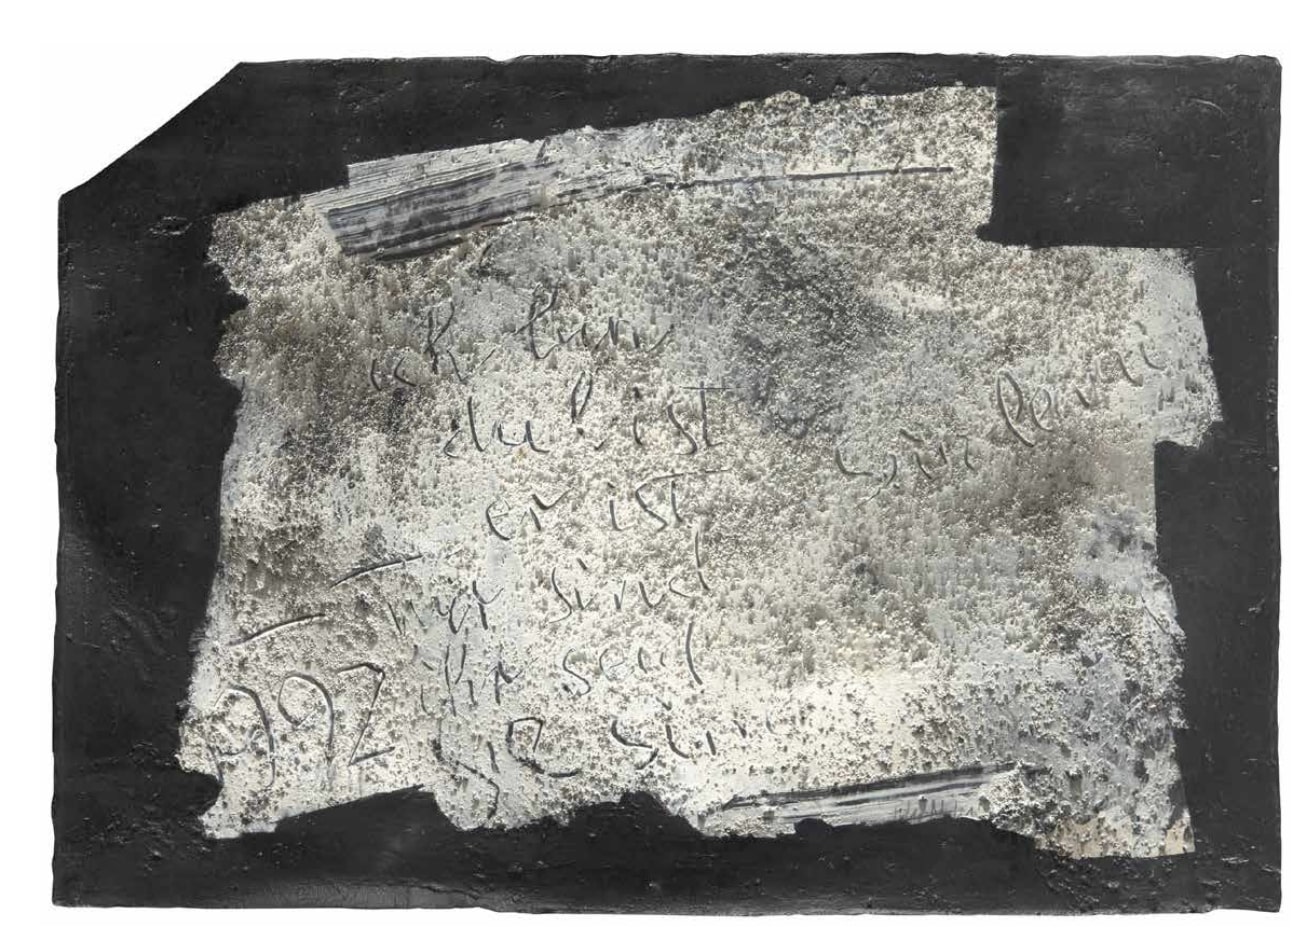 Tölg-Molnár Zoltán: Sein, lenni, 1992, pigment, kőpor, karton, 72 × 103 cm, forrás: Virág Judit Galéria archívuma / HUNGART © 2022